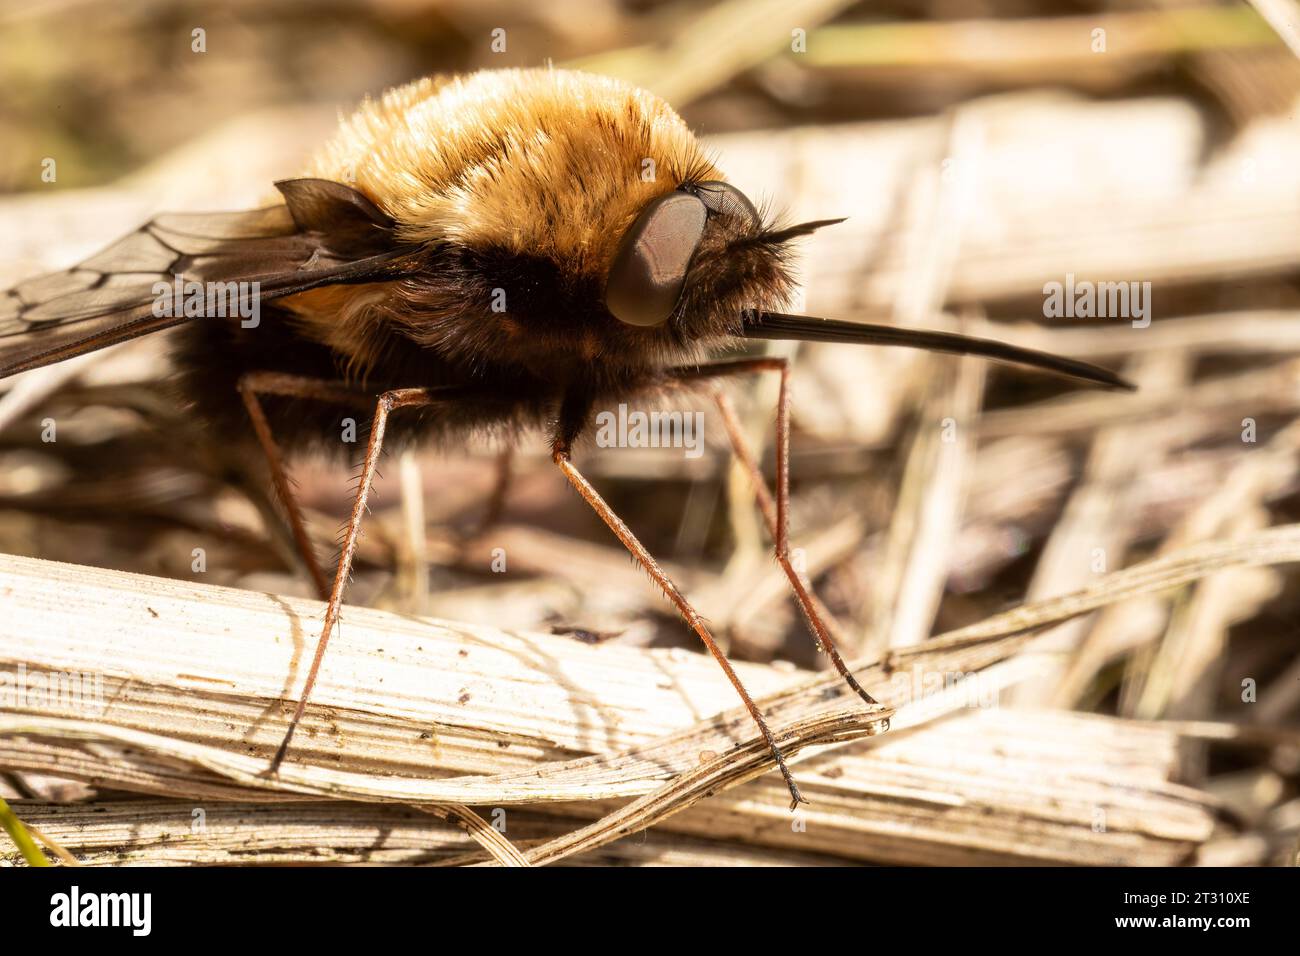 Eine dunkle Bienenfliege, die sich in der Frühlingssonne sonnt und ihren riesigen Proboscis zeigt, der zum Trinken von Nektar aus Blumen, wie ein Kolibri, geeignet ist. Stockfoto